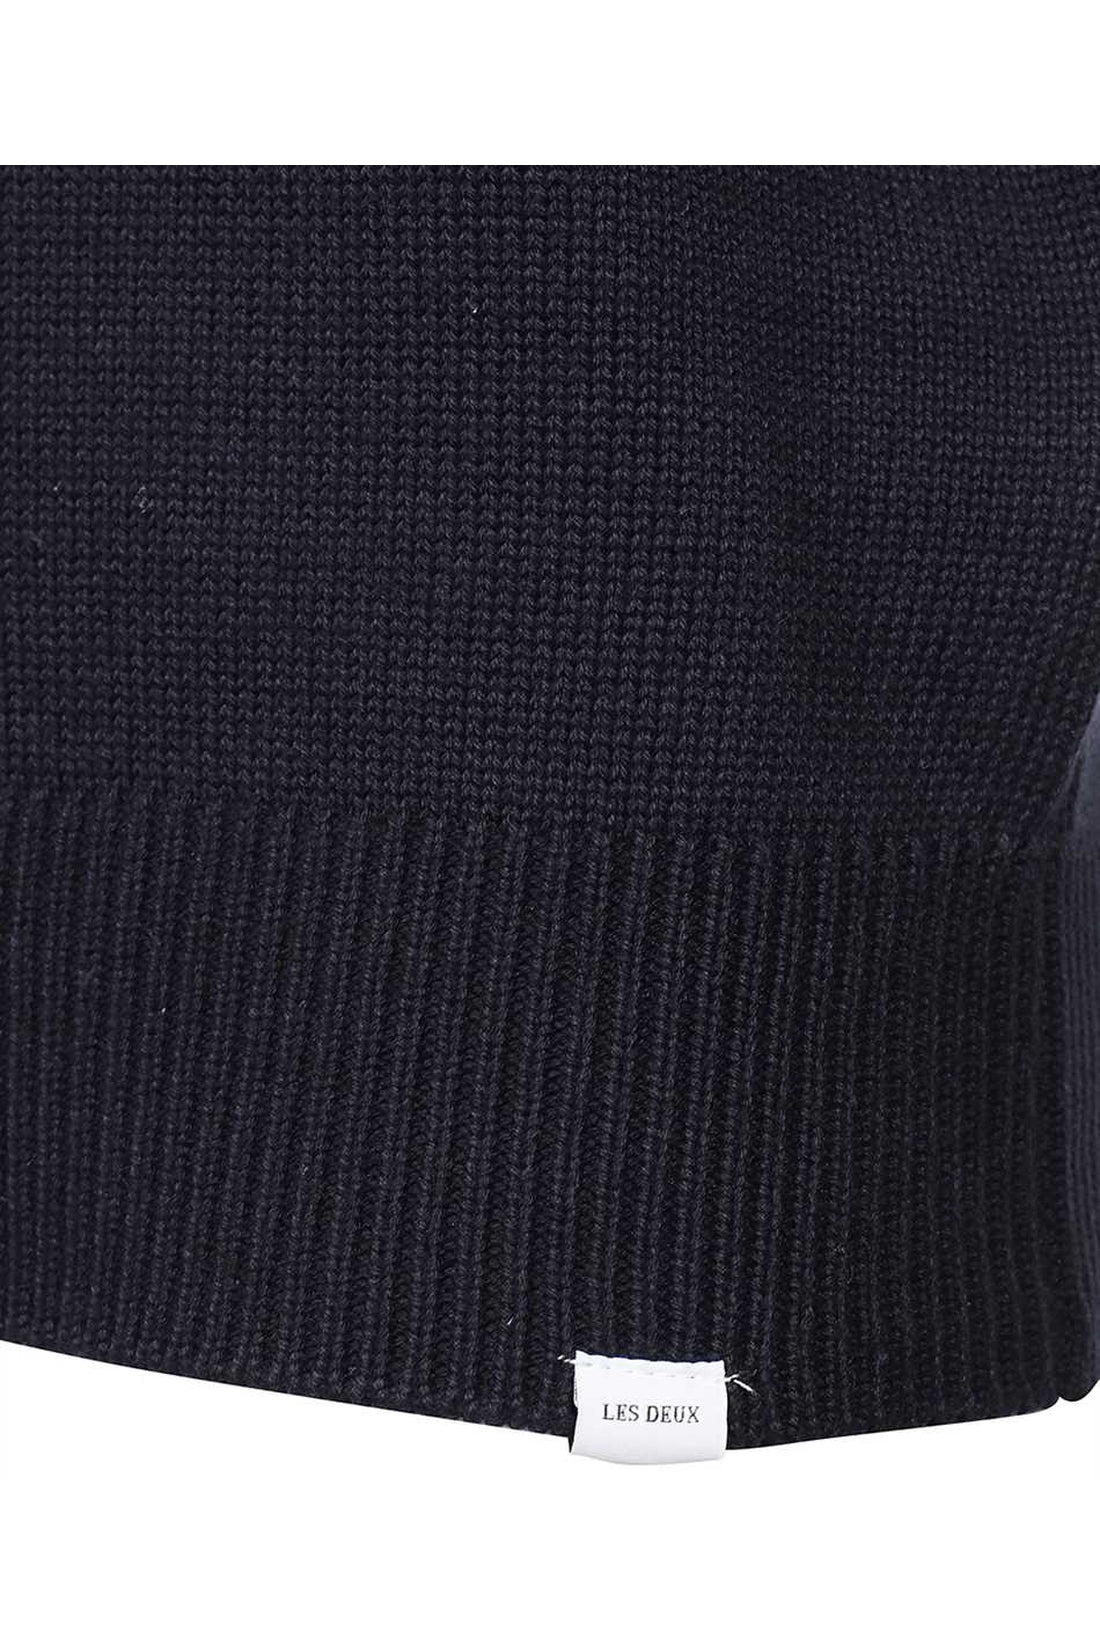 Les Deux-OUTLET-SALE-Gary long sleeve crew-neck sweater-ARCHIVIST